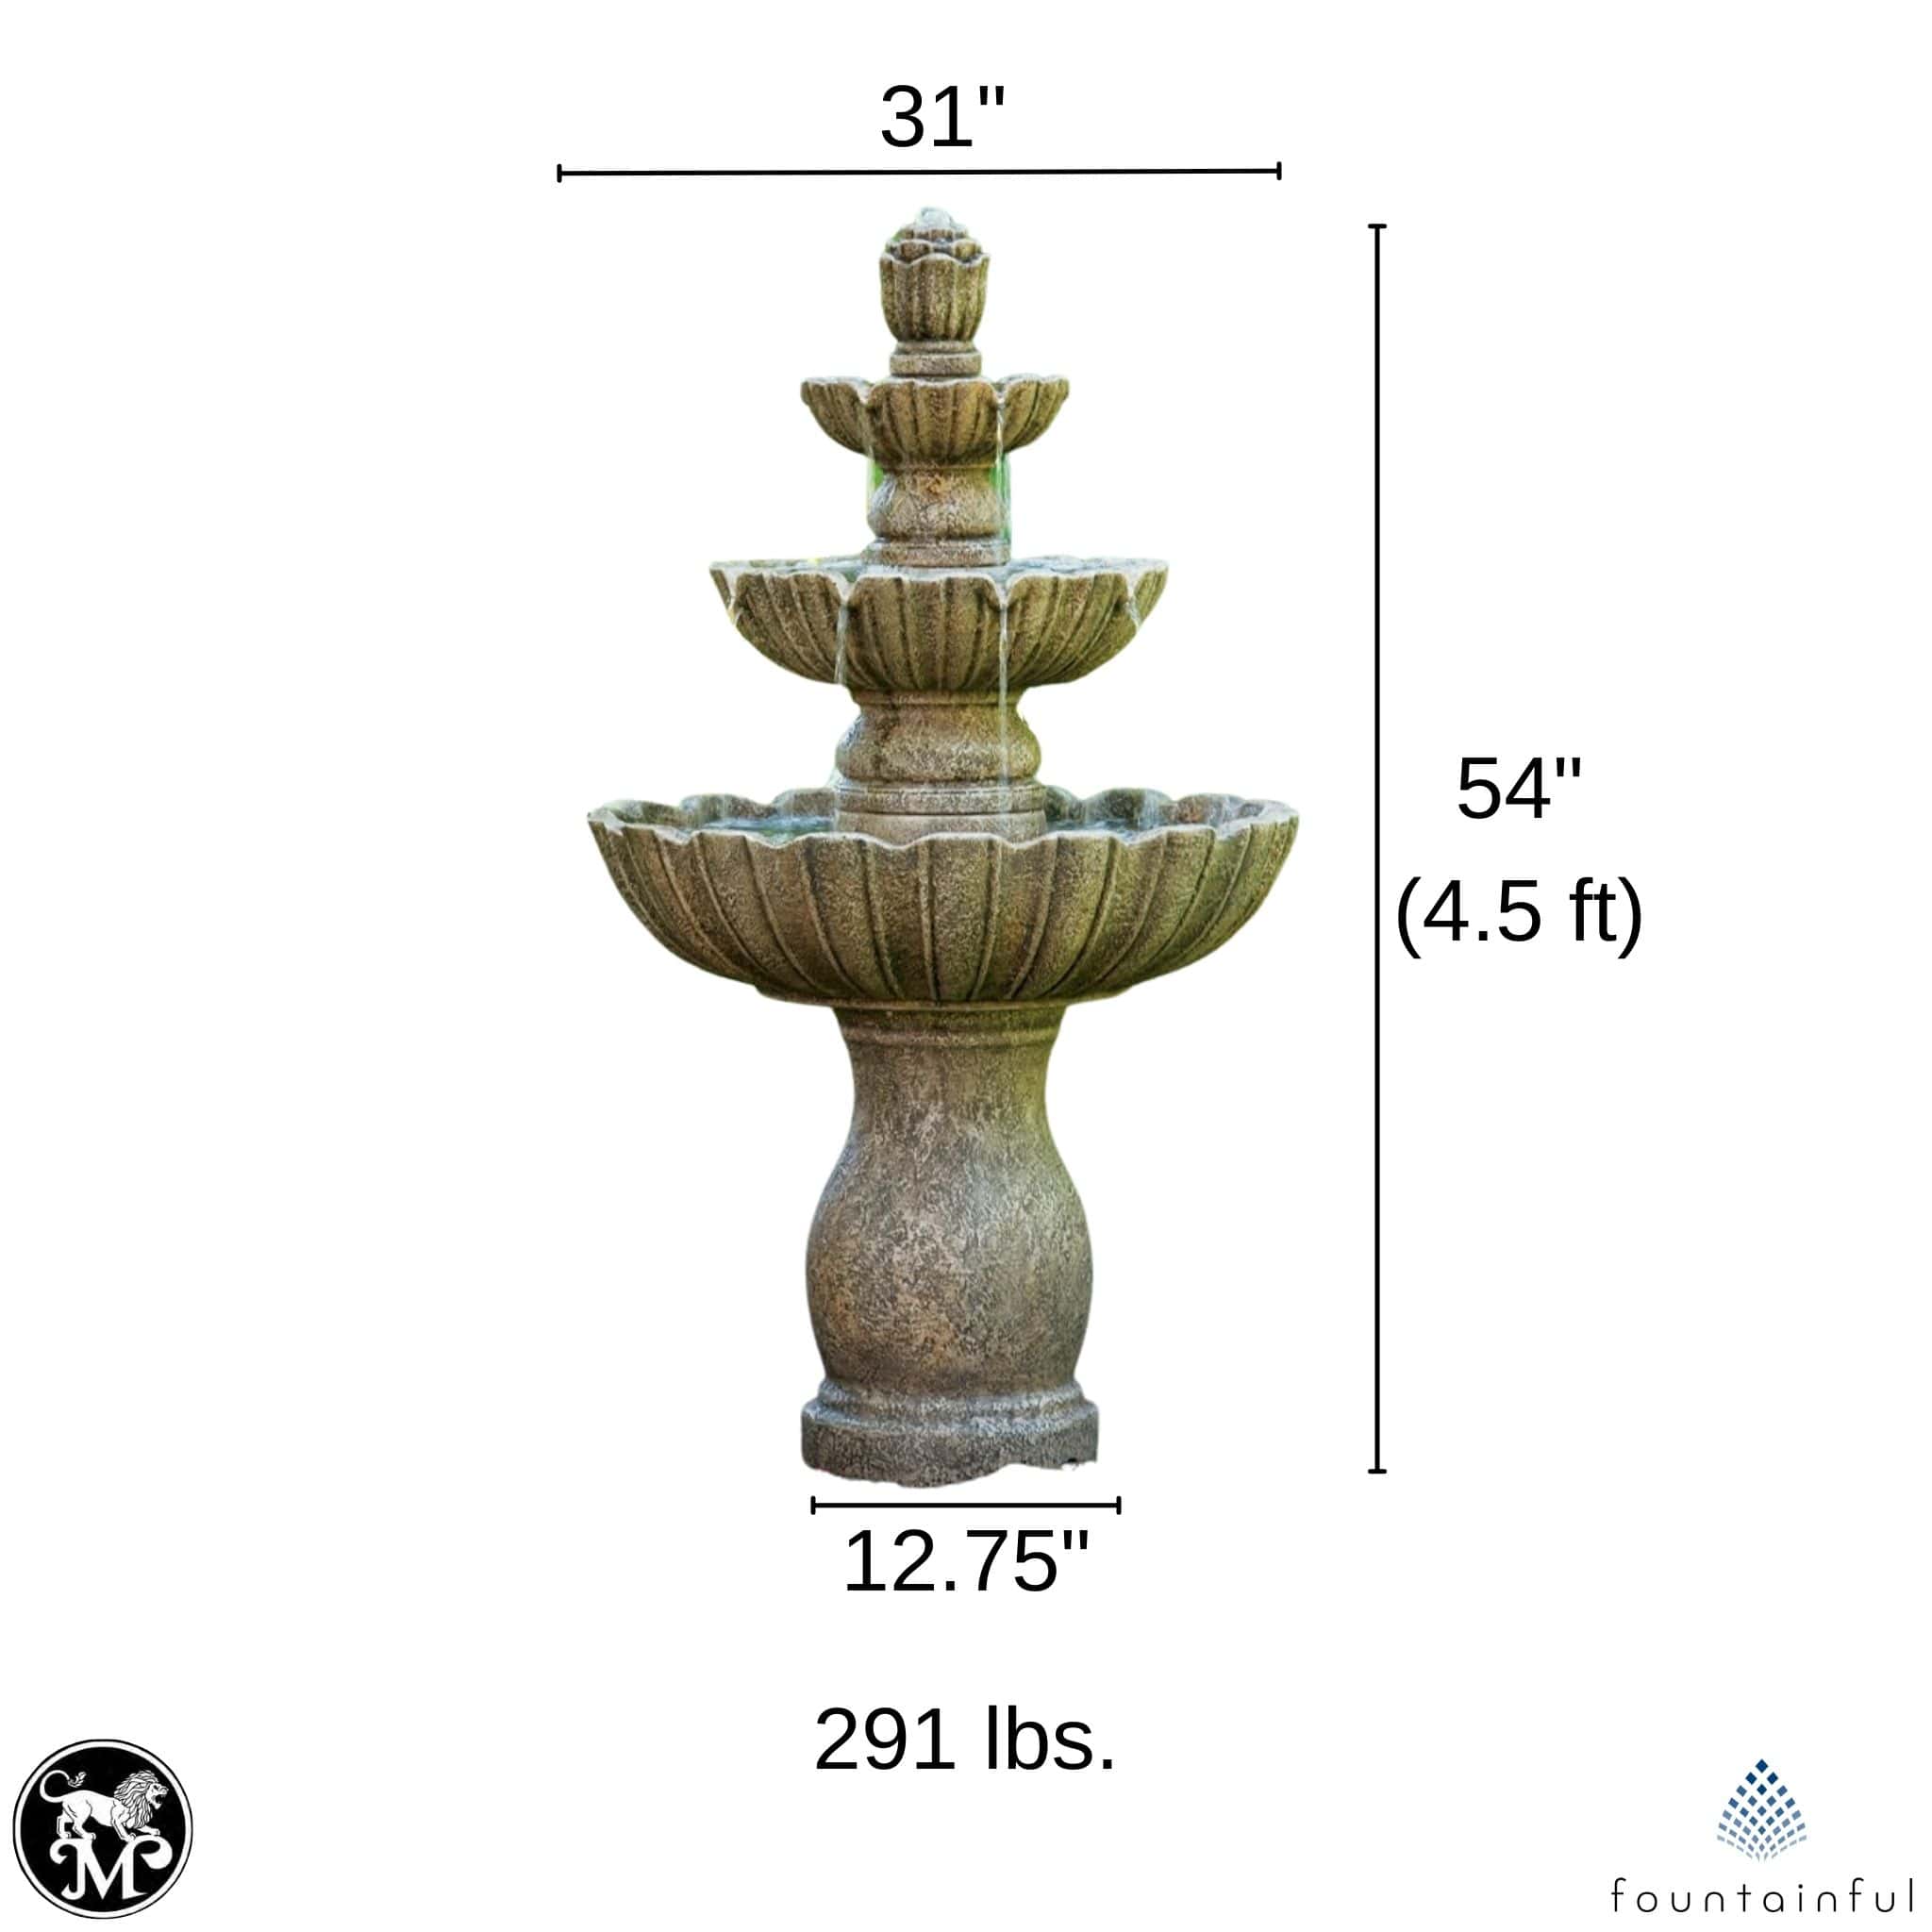 Mirabella Scallop 3-Tier Concrete Fountain - Massarellis #3631